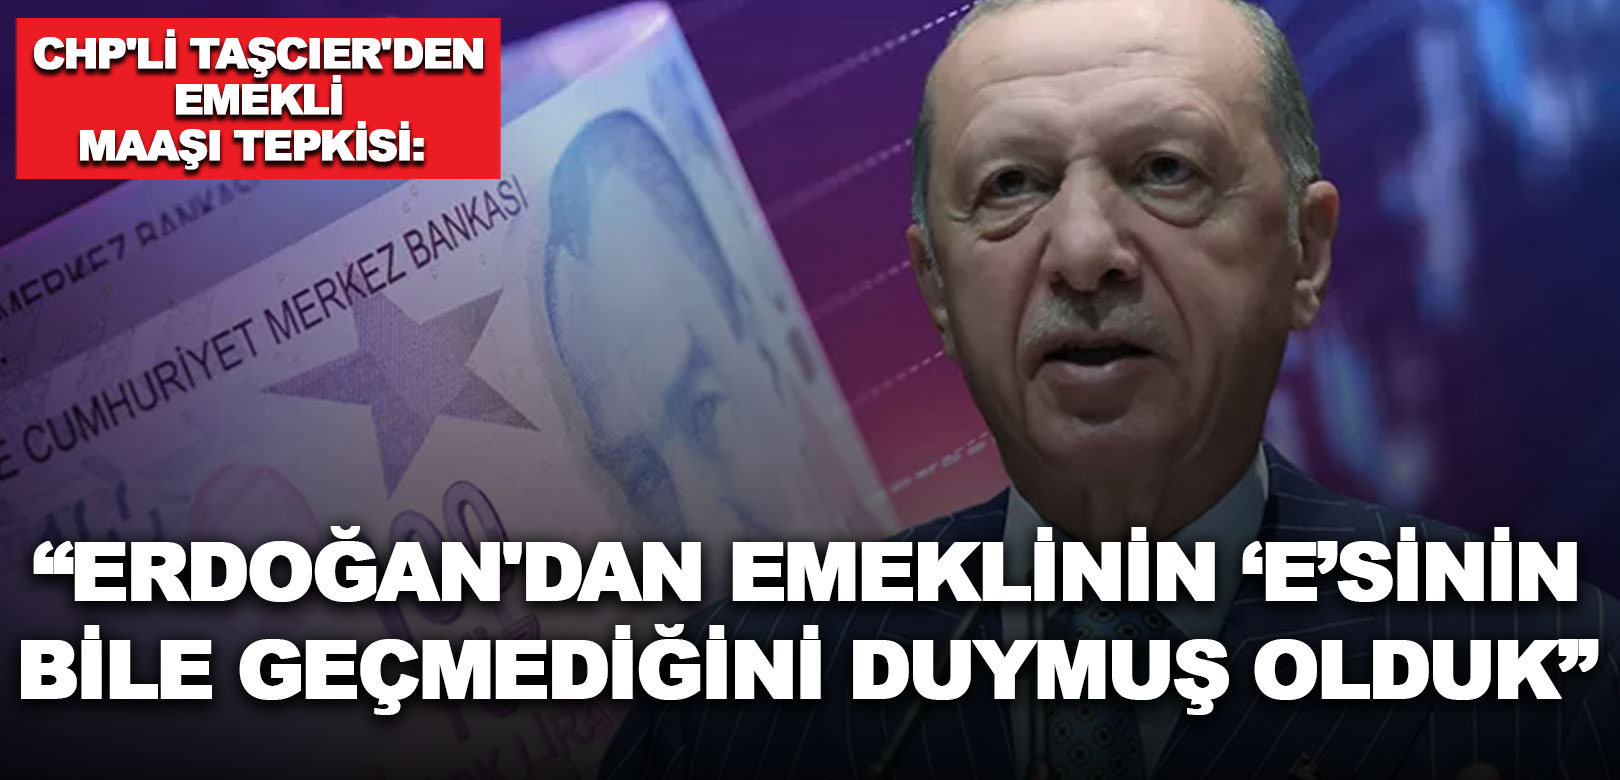 CHP’li Taşcıer’den emekli maaşı tepkisi: Erdoğan'ın İstanbul ve Ankara mitinglerinde emeklinin 'e'si bile geçmedi